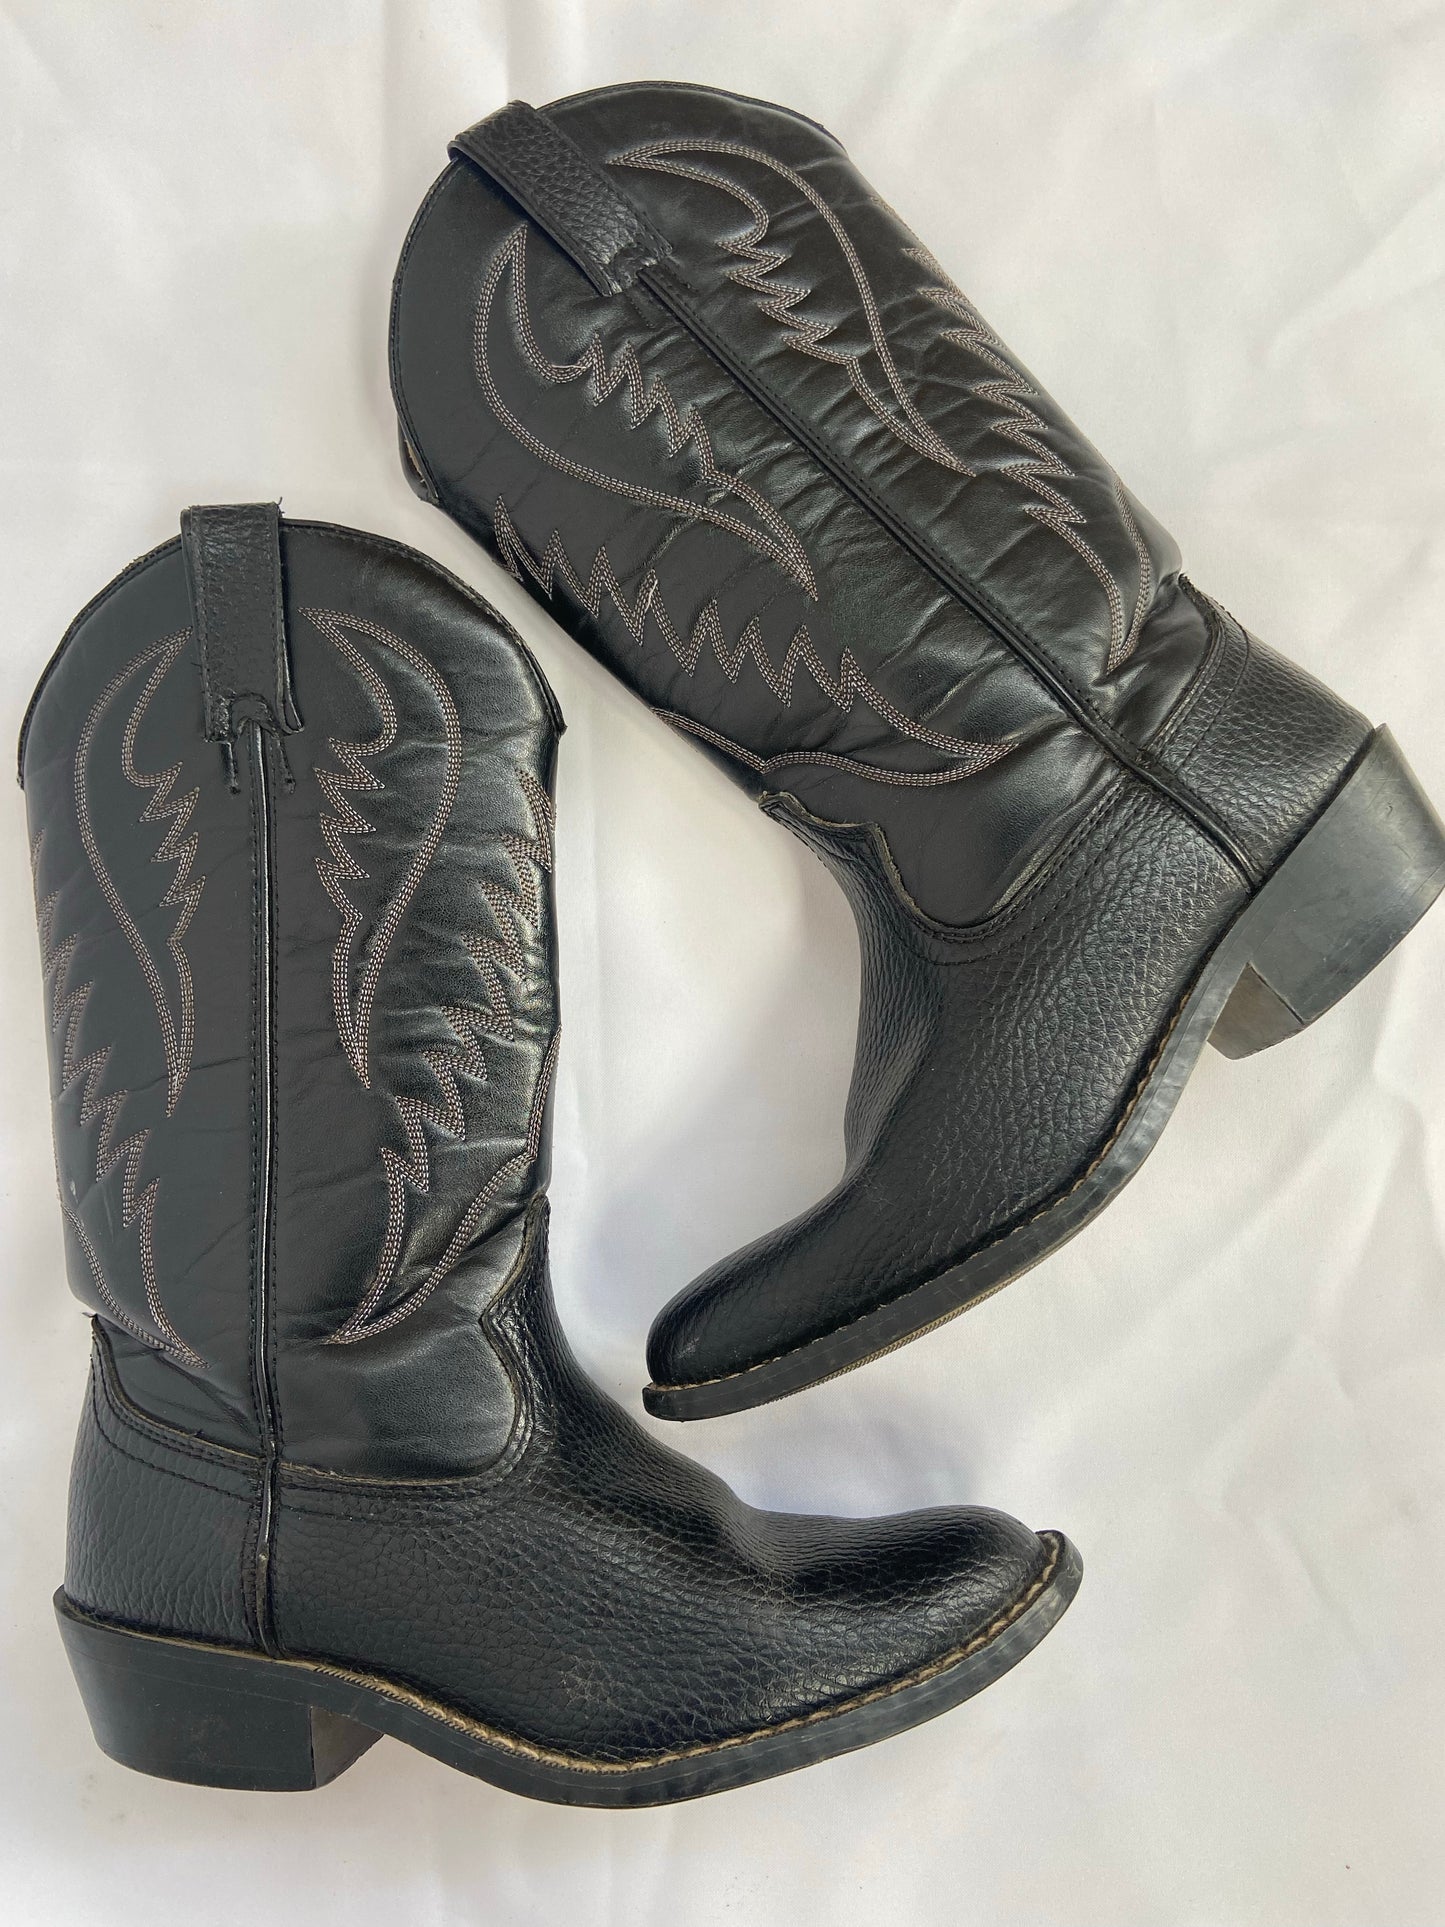 Black Contrast Stitch Cowboy Boots - 8.5/9